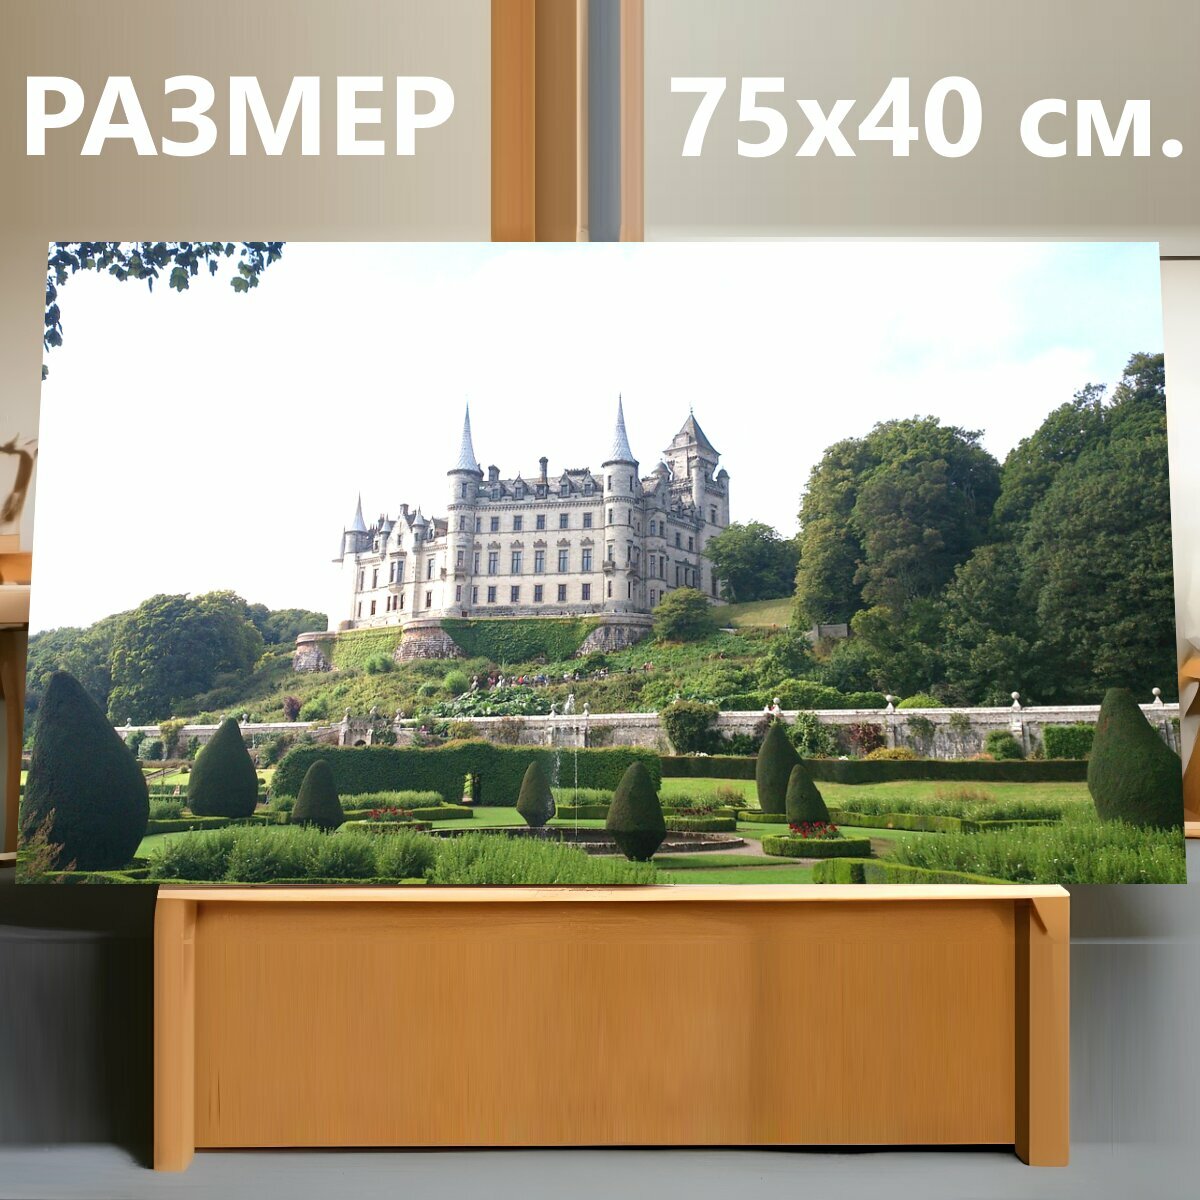 Картина на холсте "Шотландия, замок, сказочный замок" на подрамнике 75х40 см. для интерьера